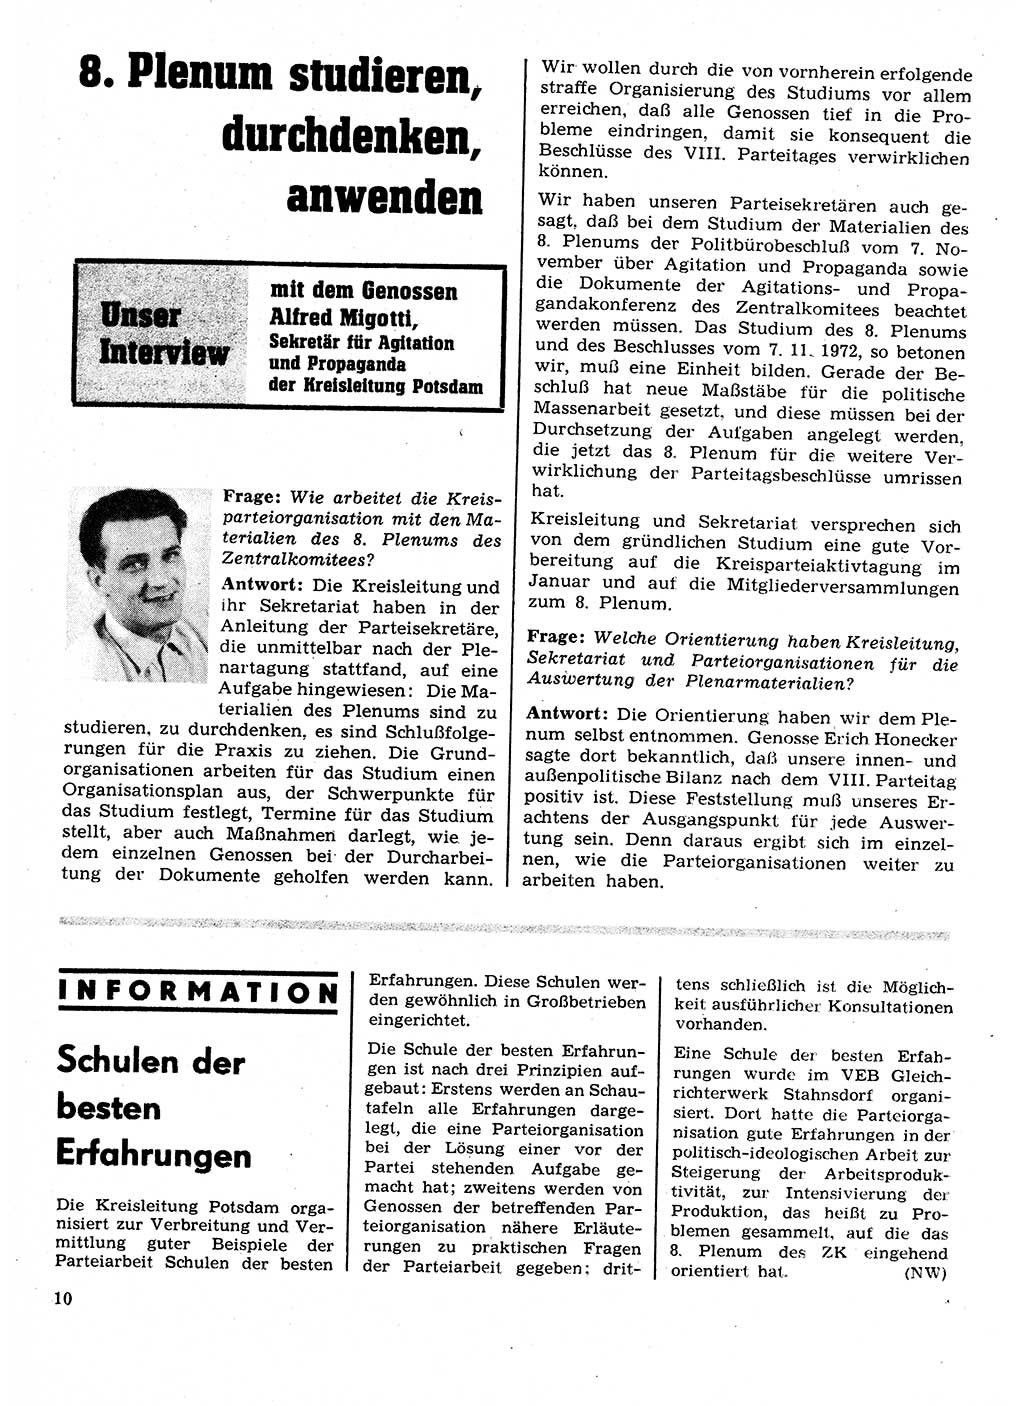 Neuer Weg (NW), Organ des Zentralkomitees (ZK) der SED (Sozialistische Einheitspartei Deutschlands) für Fragen des Parteilebens, 28. Jahrgang [Deutsche Demokratische Republik (DDR)] 1973, Seite 10 (NW ZK SED DDR 1973, S. 10)